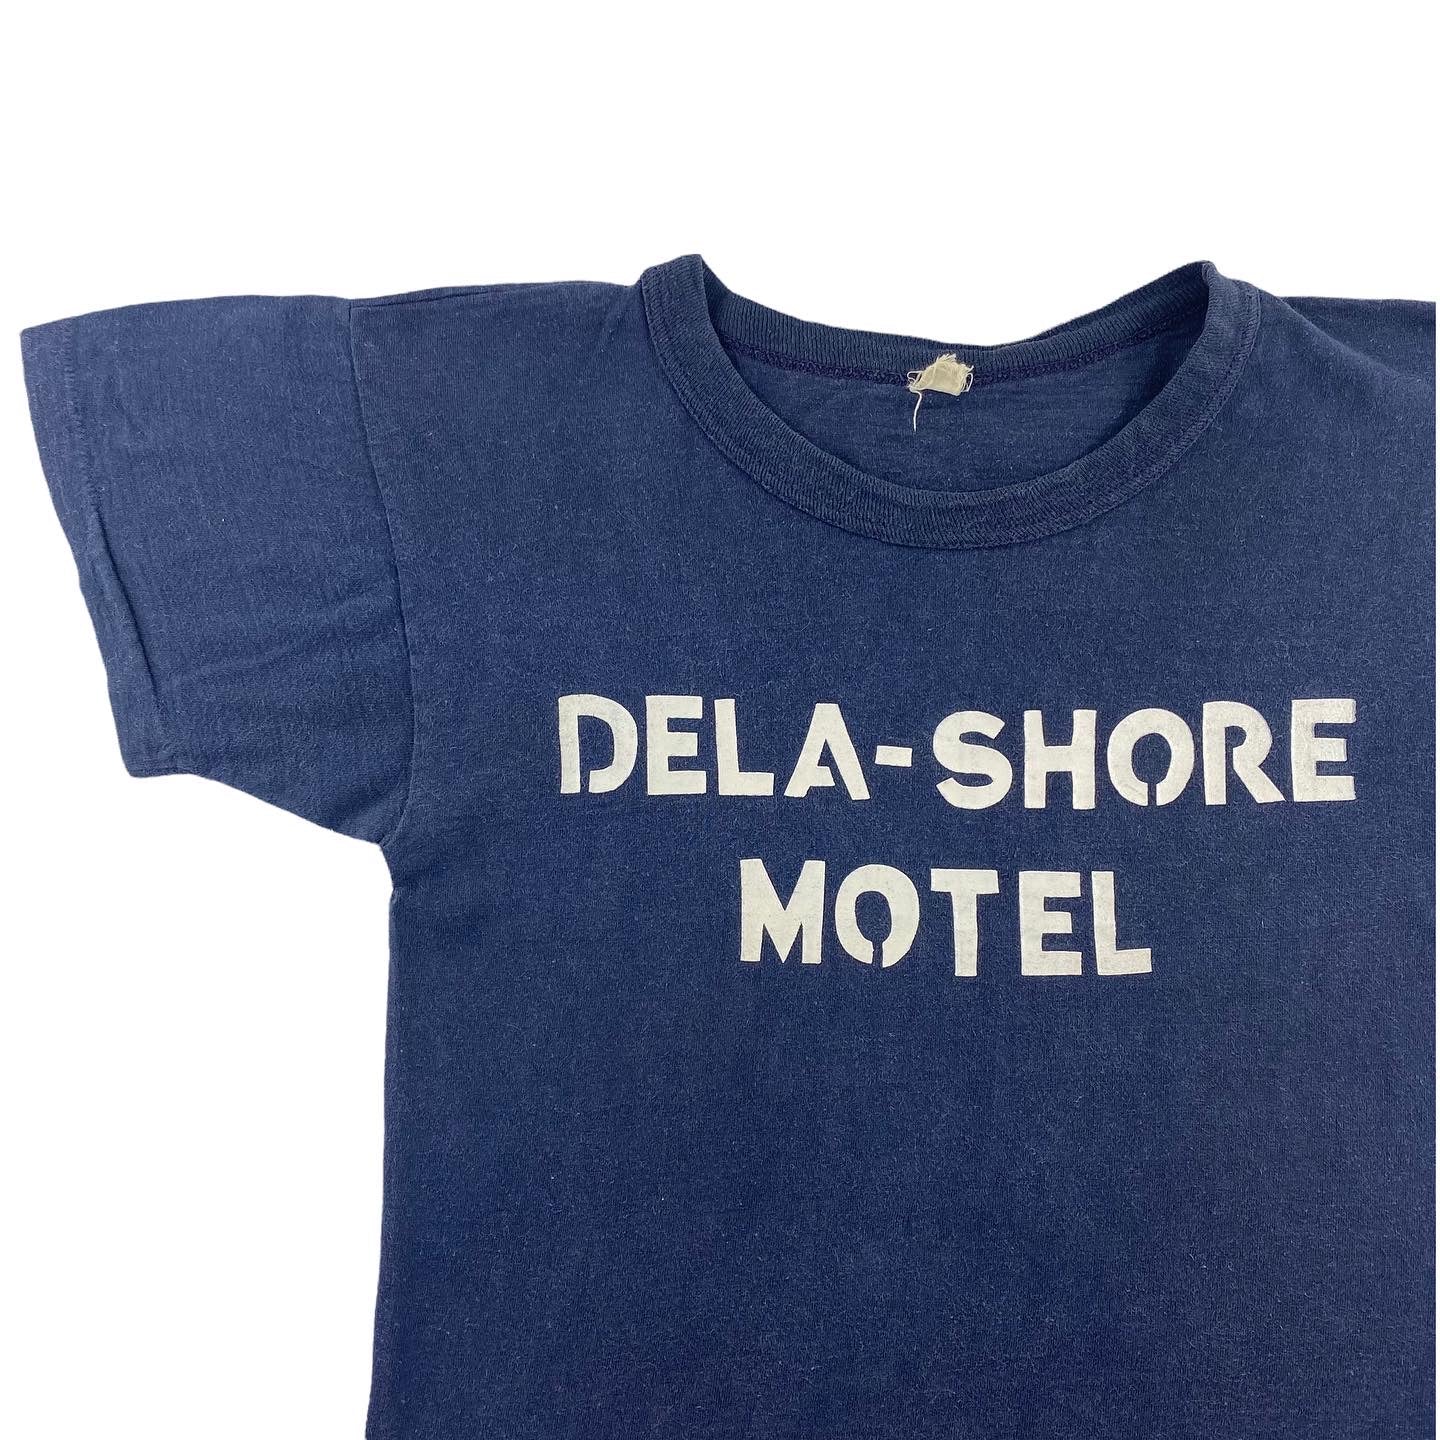 70s Dela-shore motel staff tee. Small